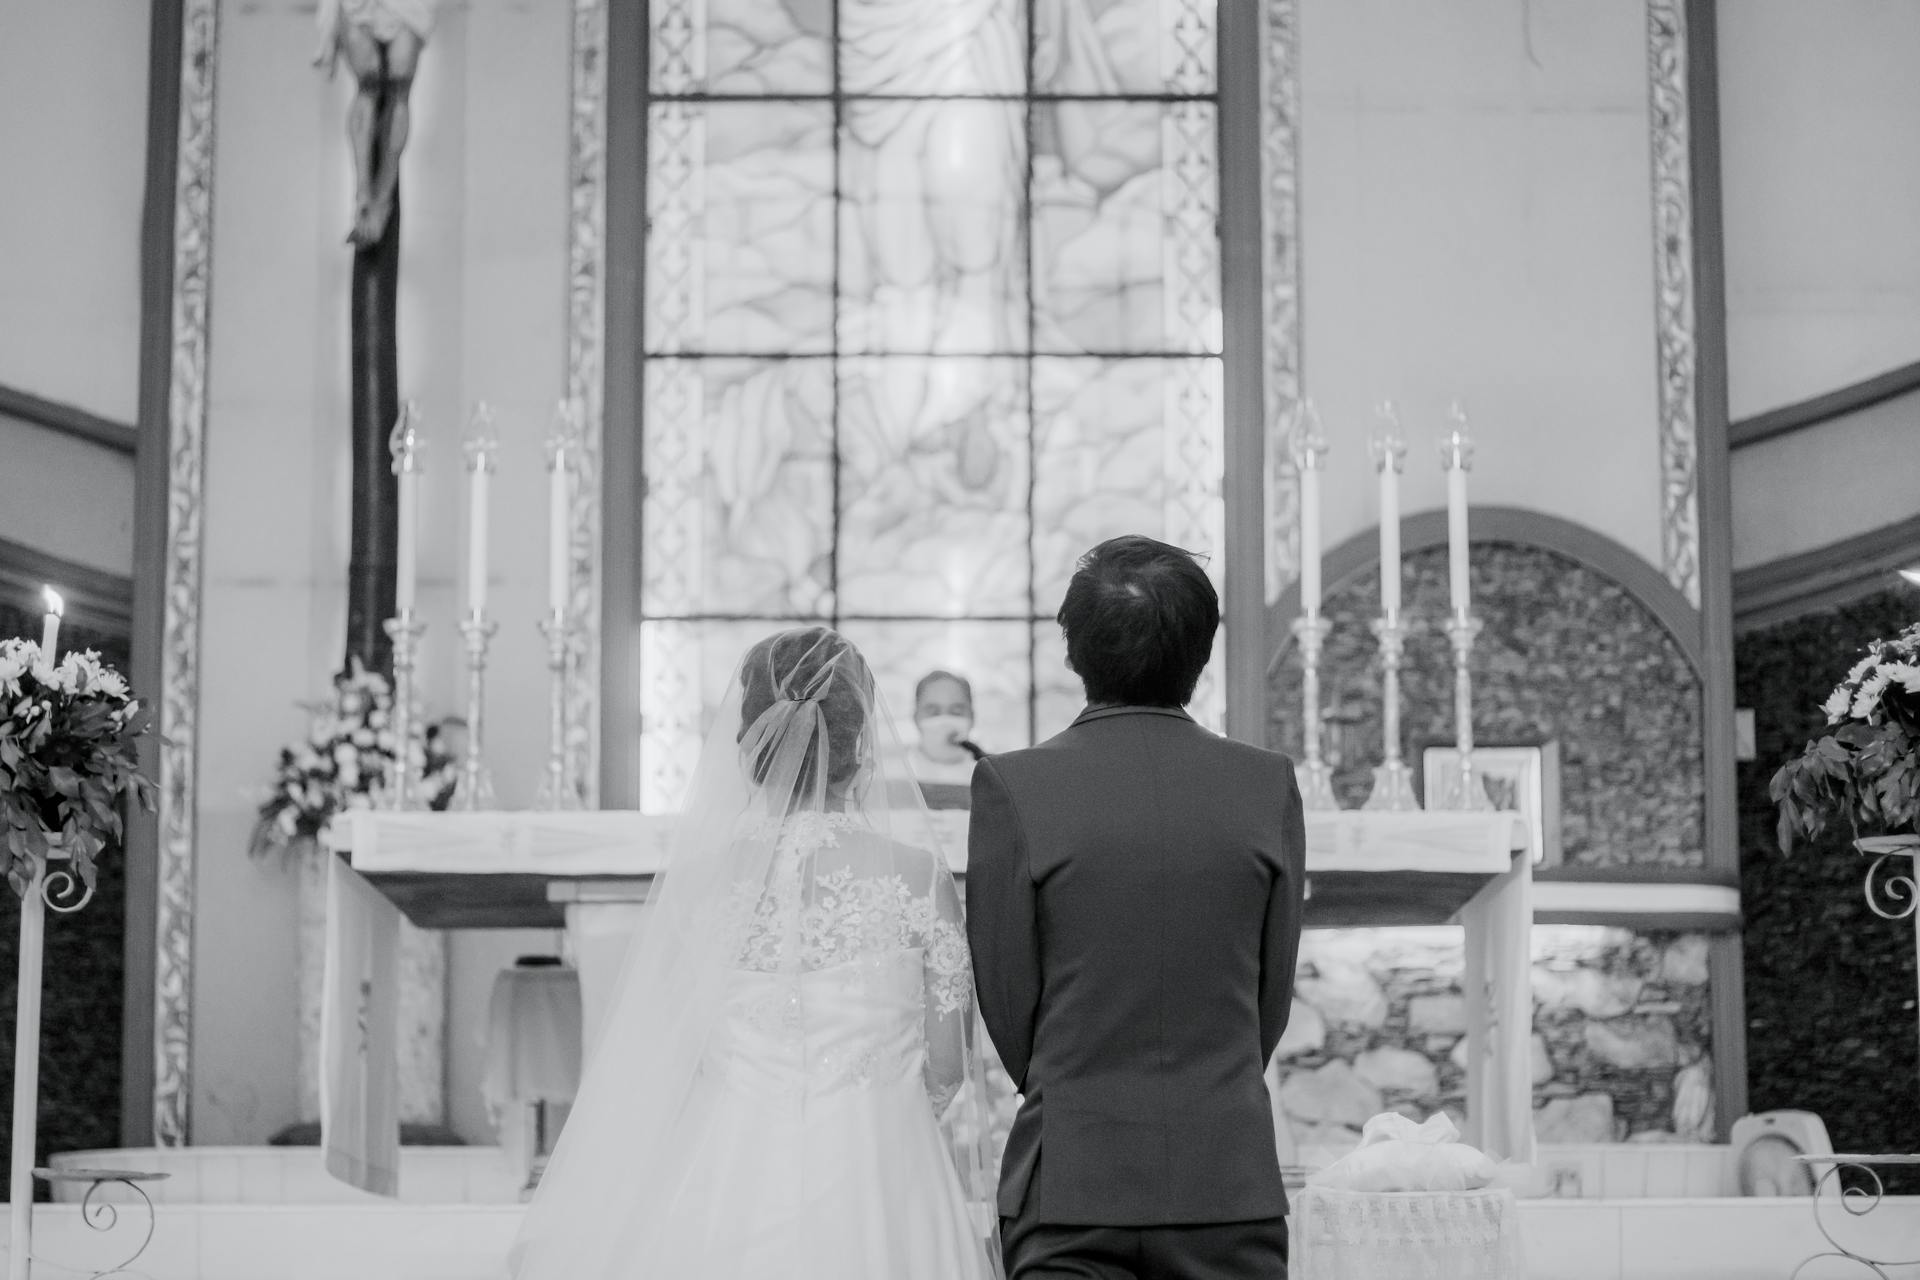 Un couple devant l'autel | Source : Pexels